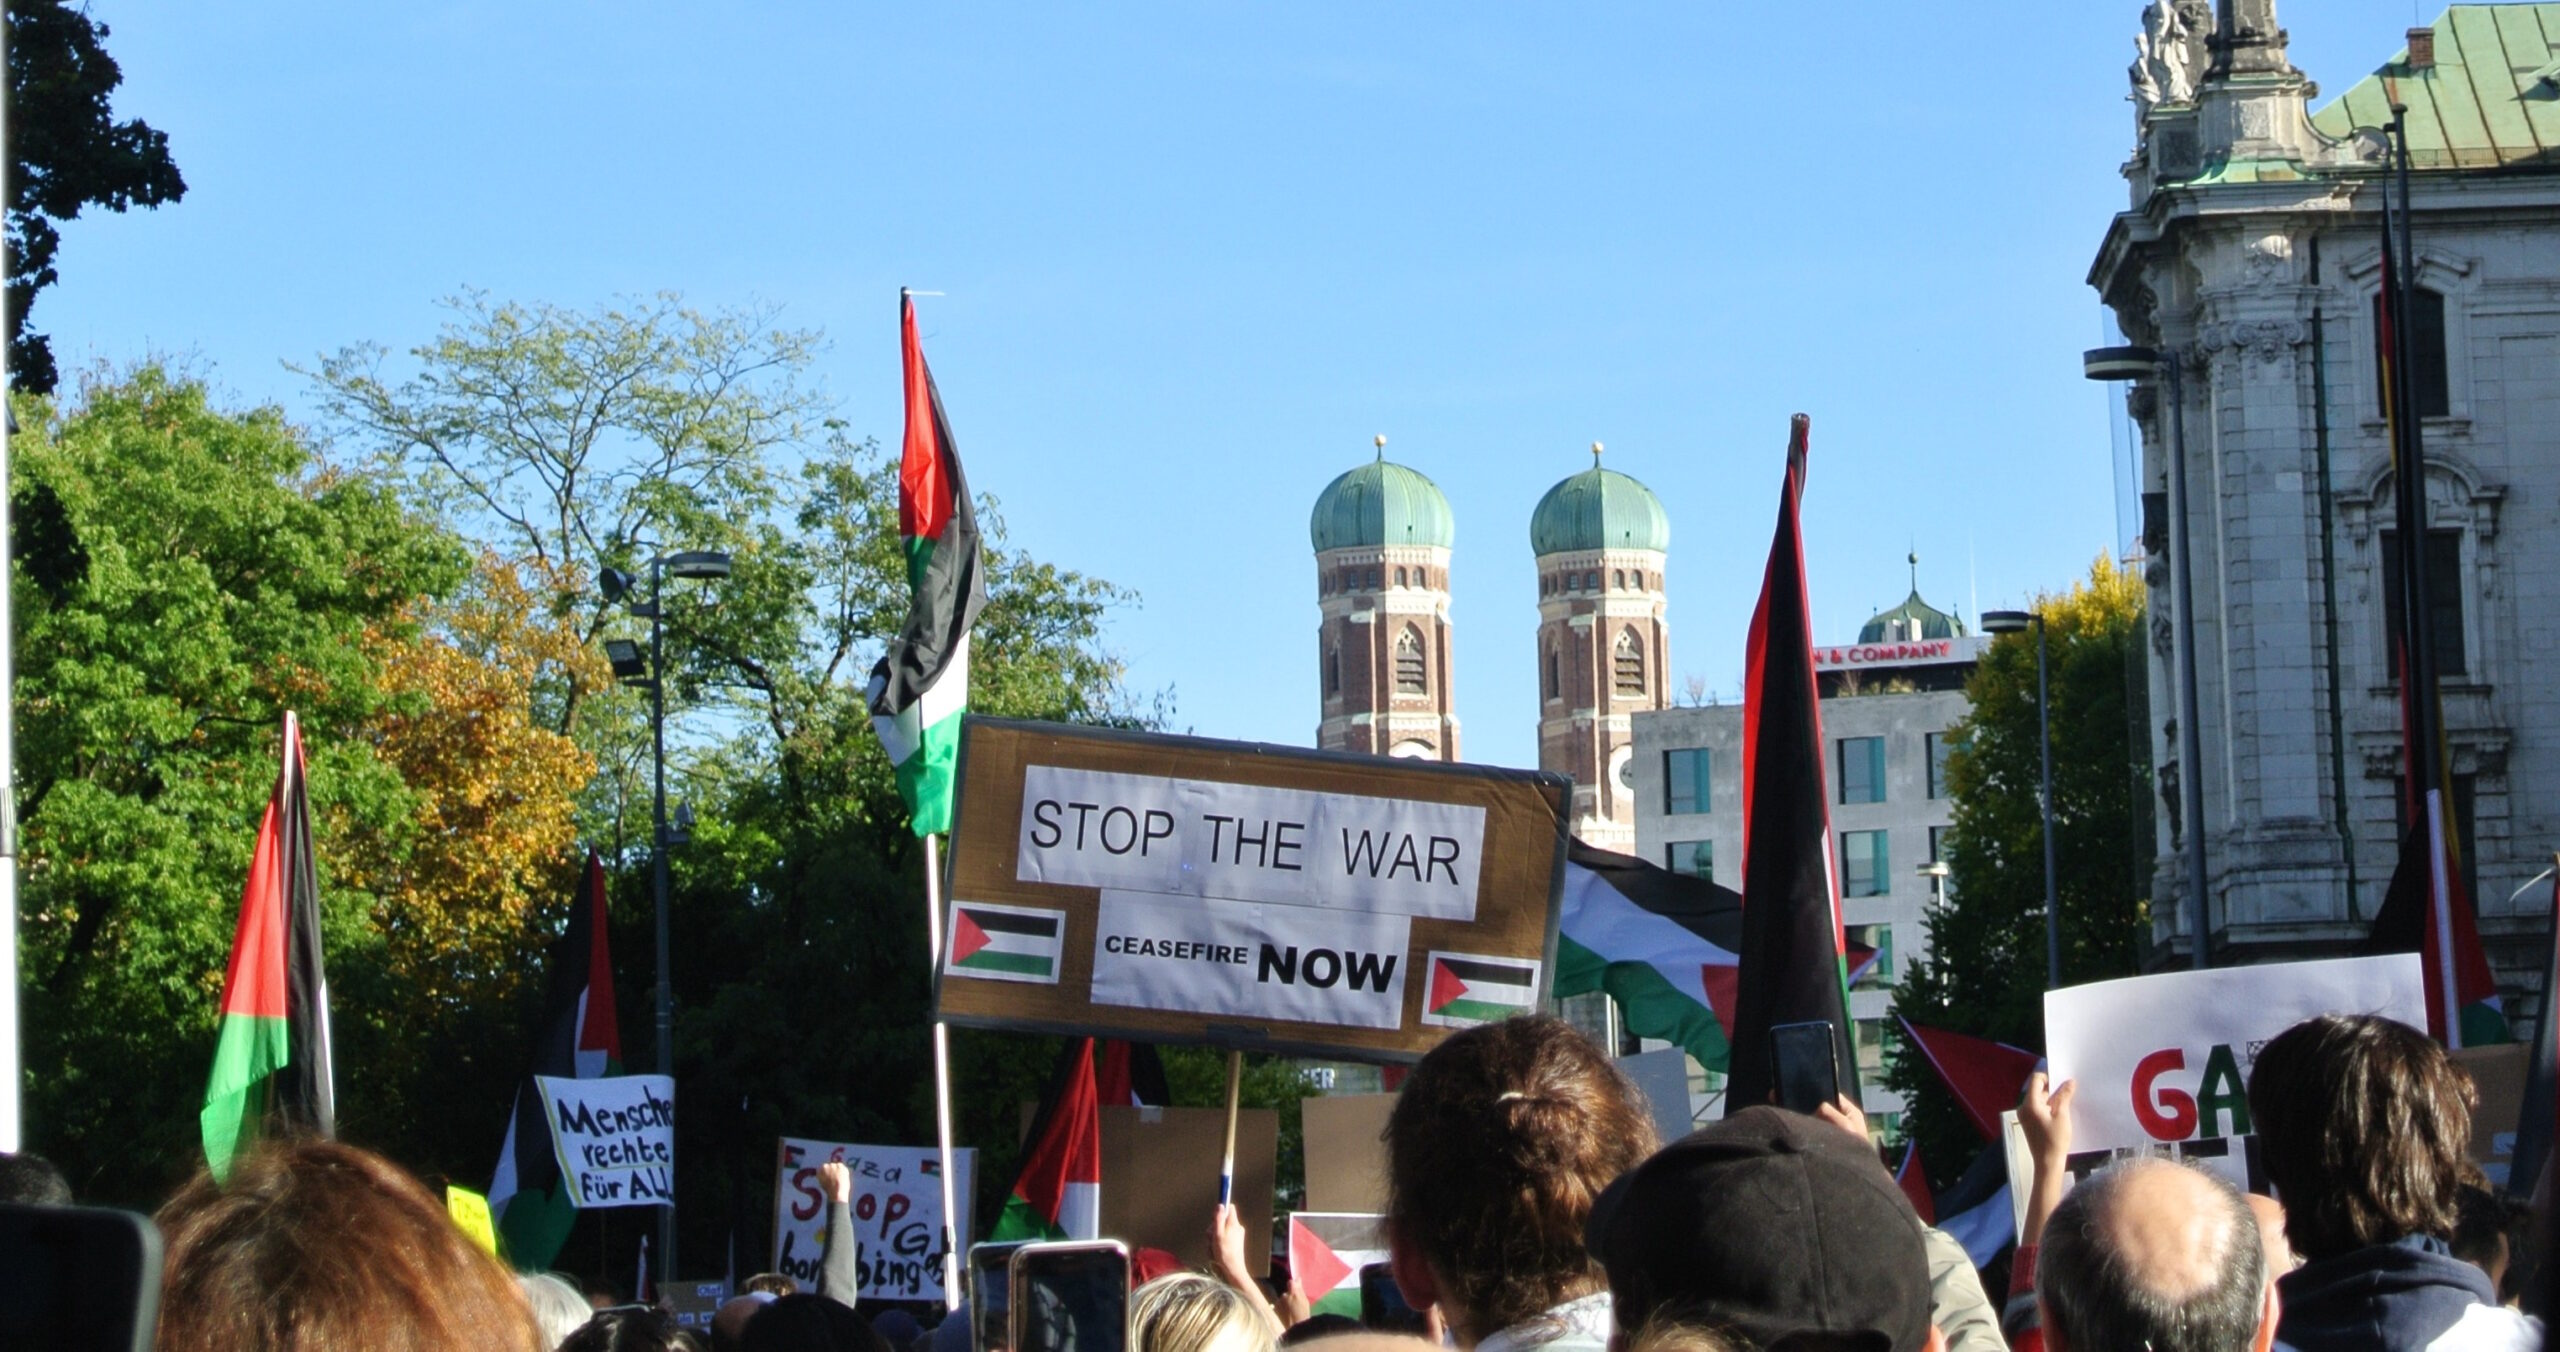 Demoaufruf München 11. November: Stoppt den Genozid! Freiheit für Gaza, Freiheit für Palästina!